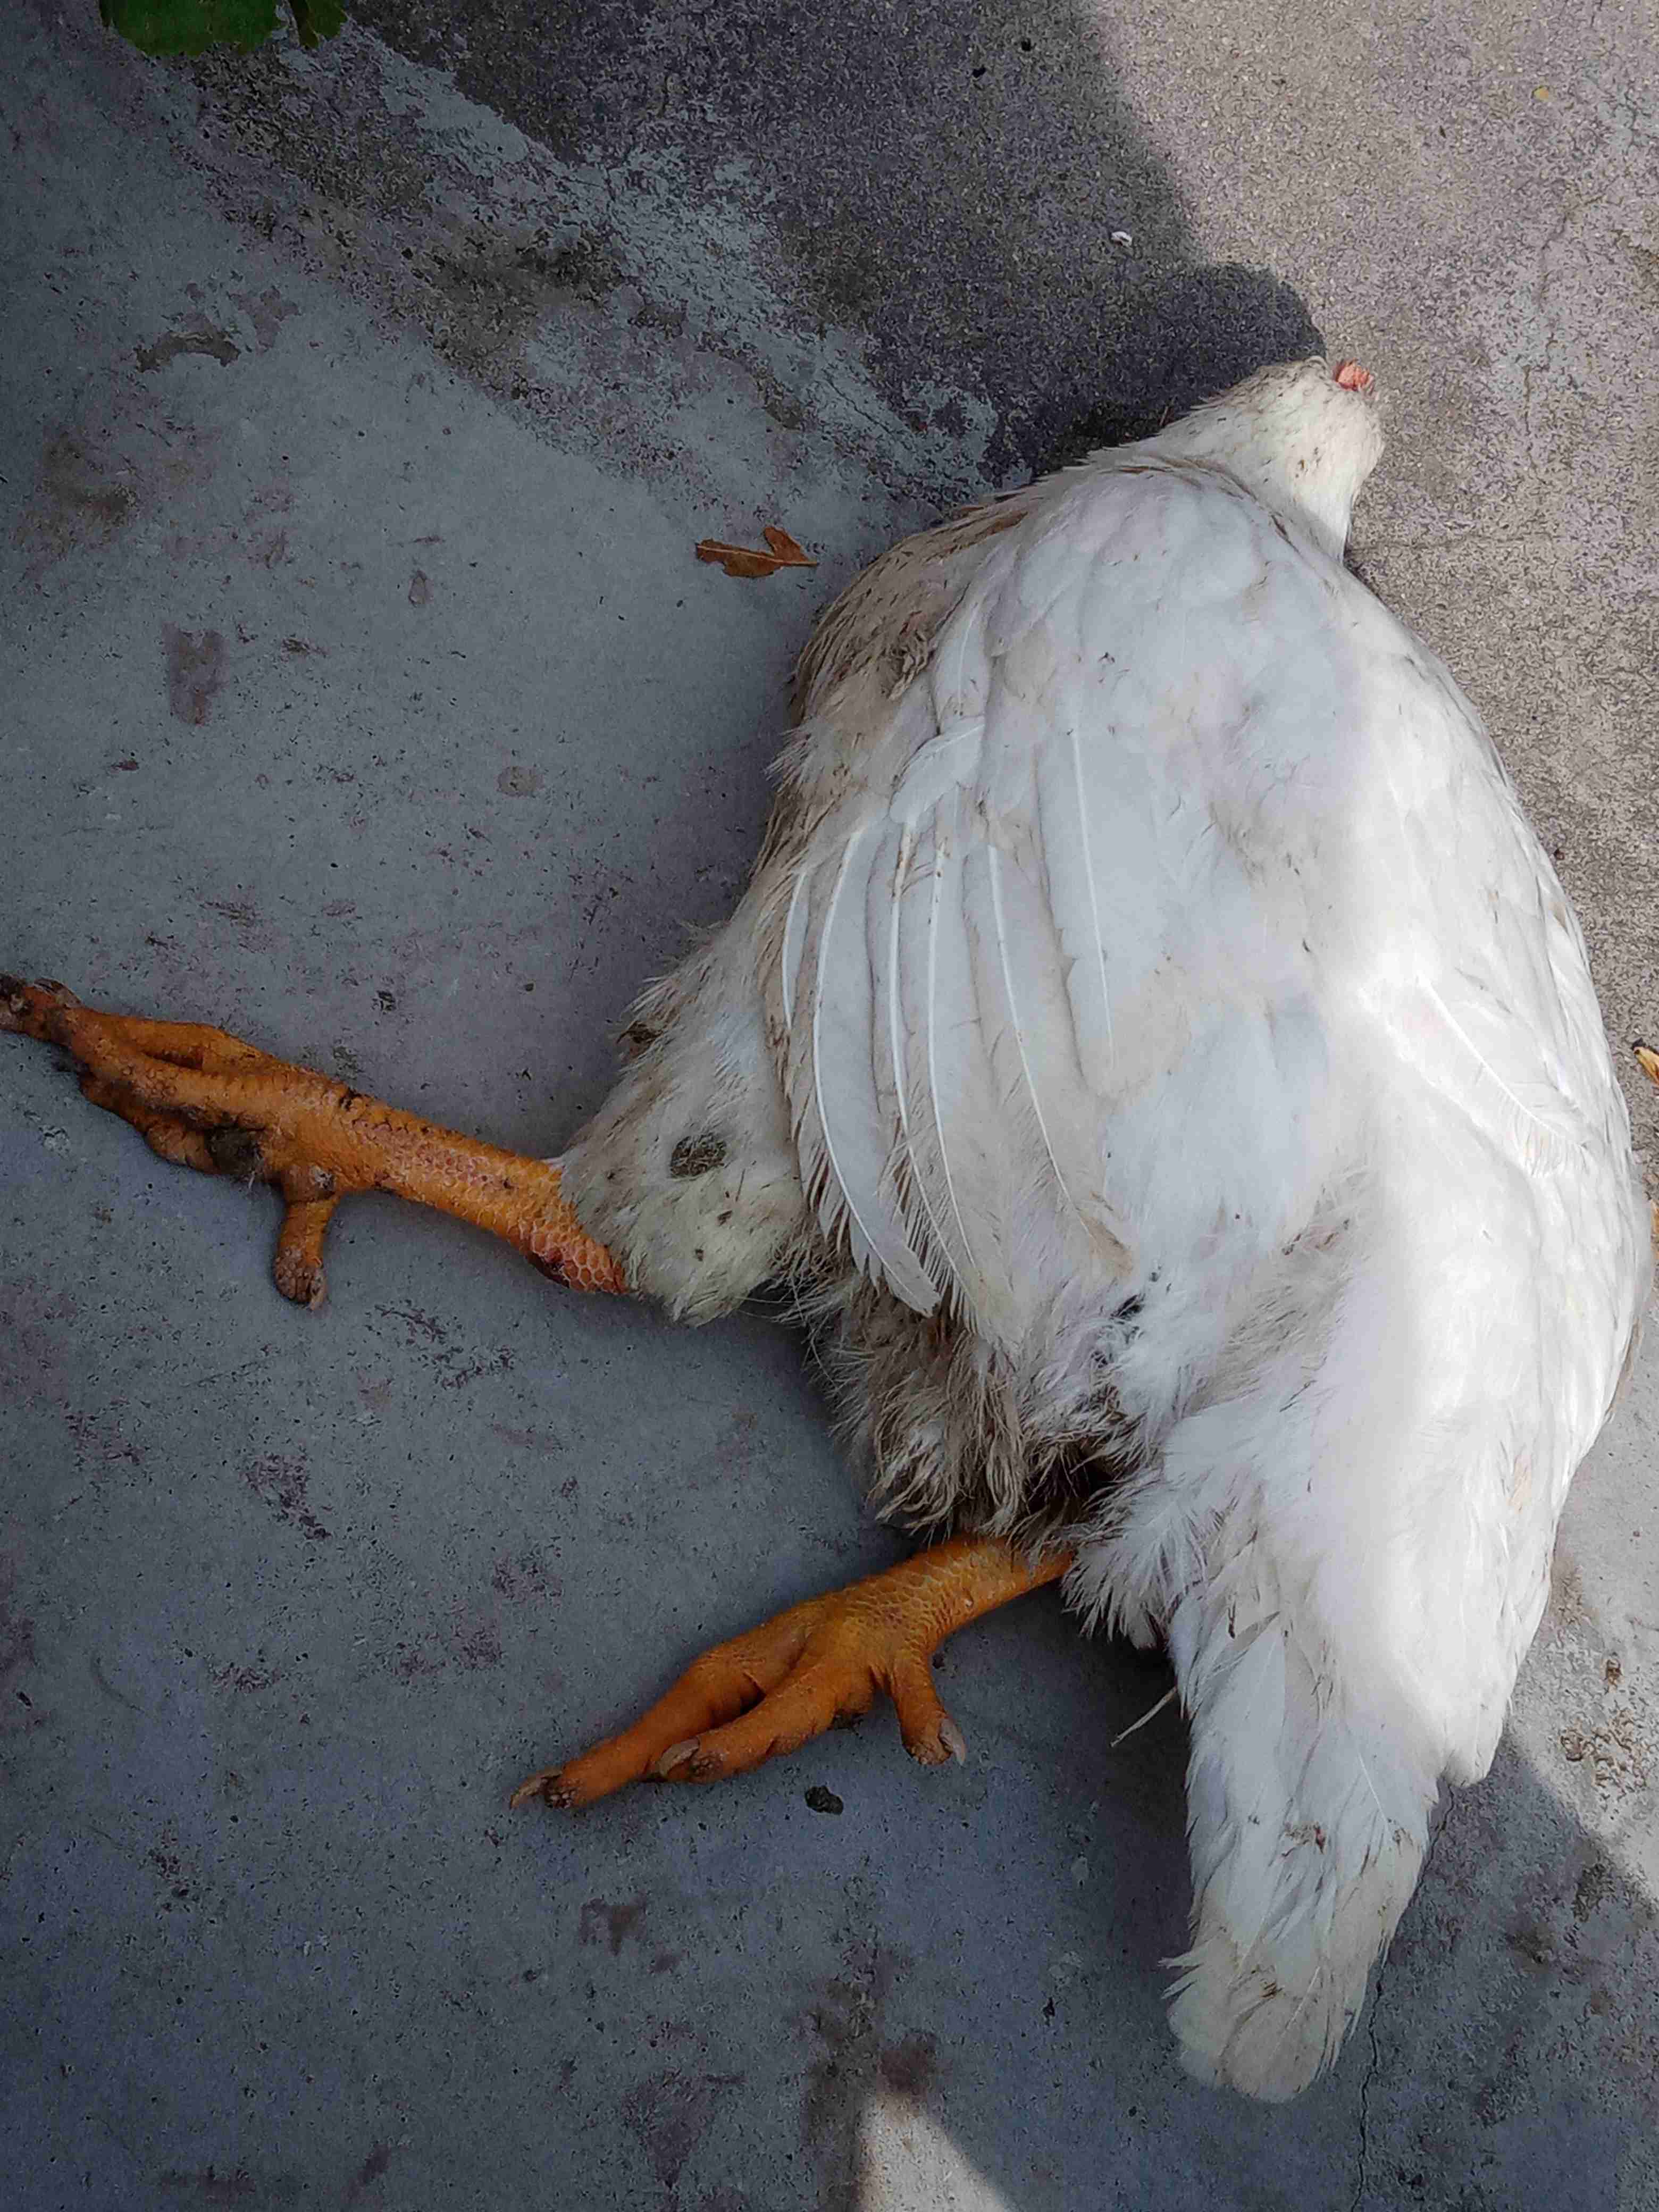 白羽肉鸡瘫痪没有食欲不吃食物鸡尾巴耷拉有点哆嗦